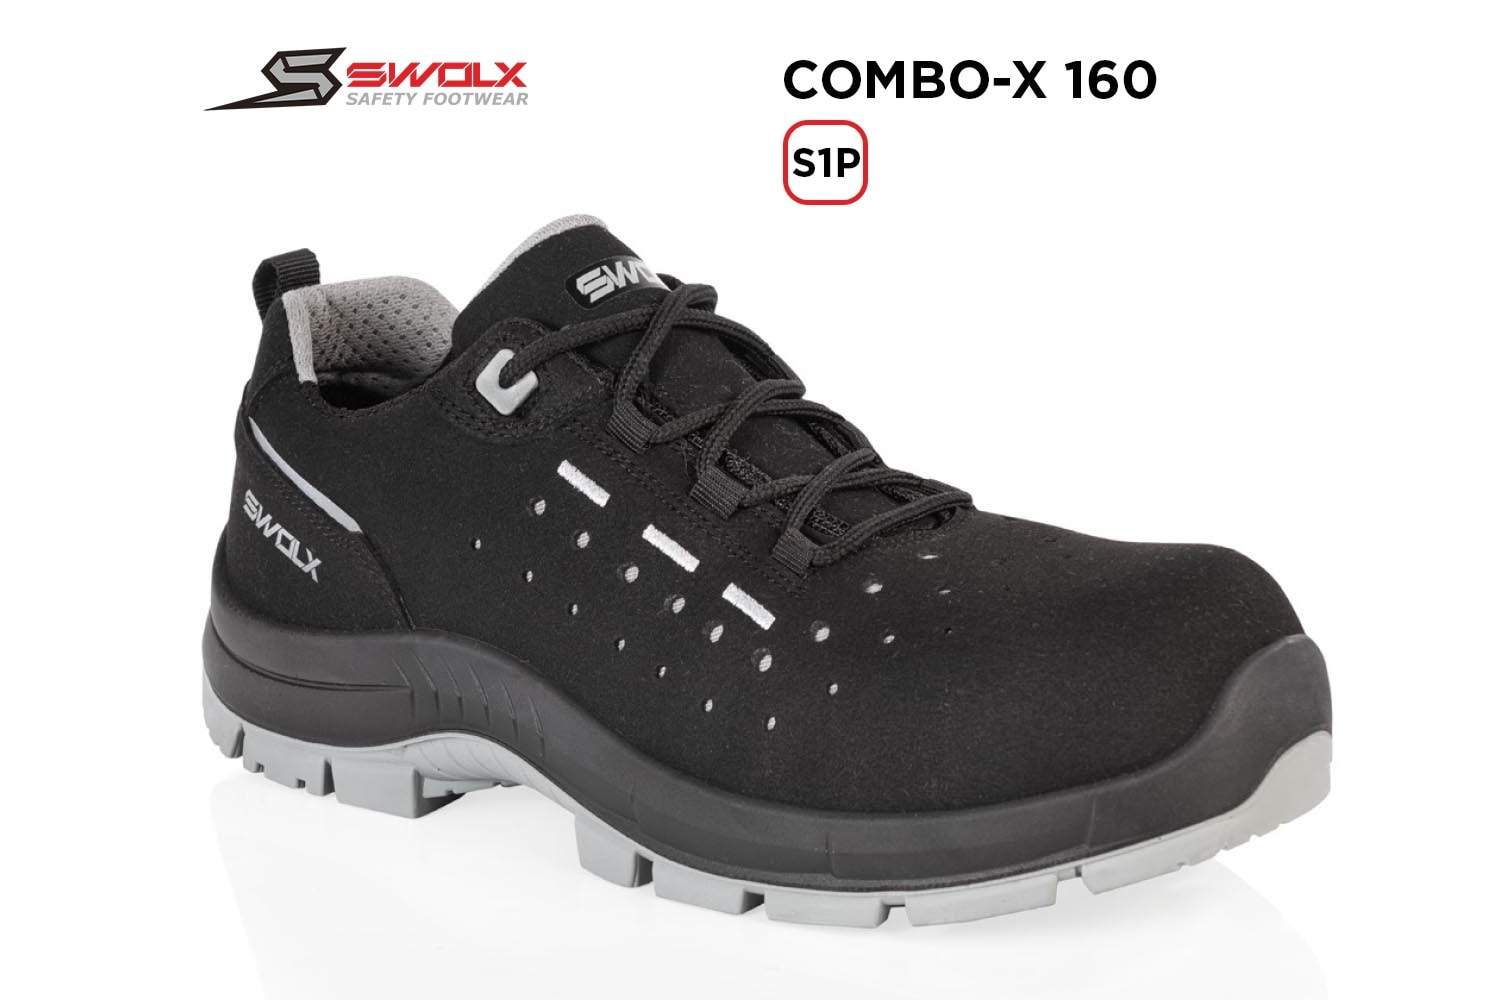 Swolx İş Ayakkabısı - Combo-X 160 S1P - 45